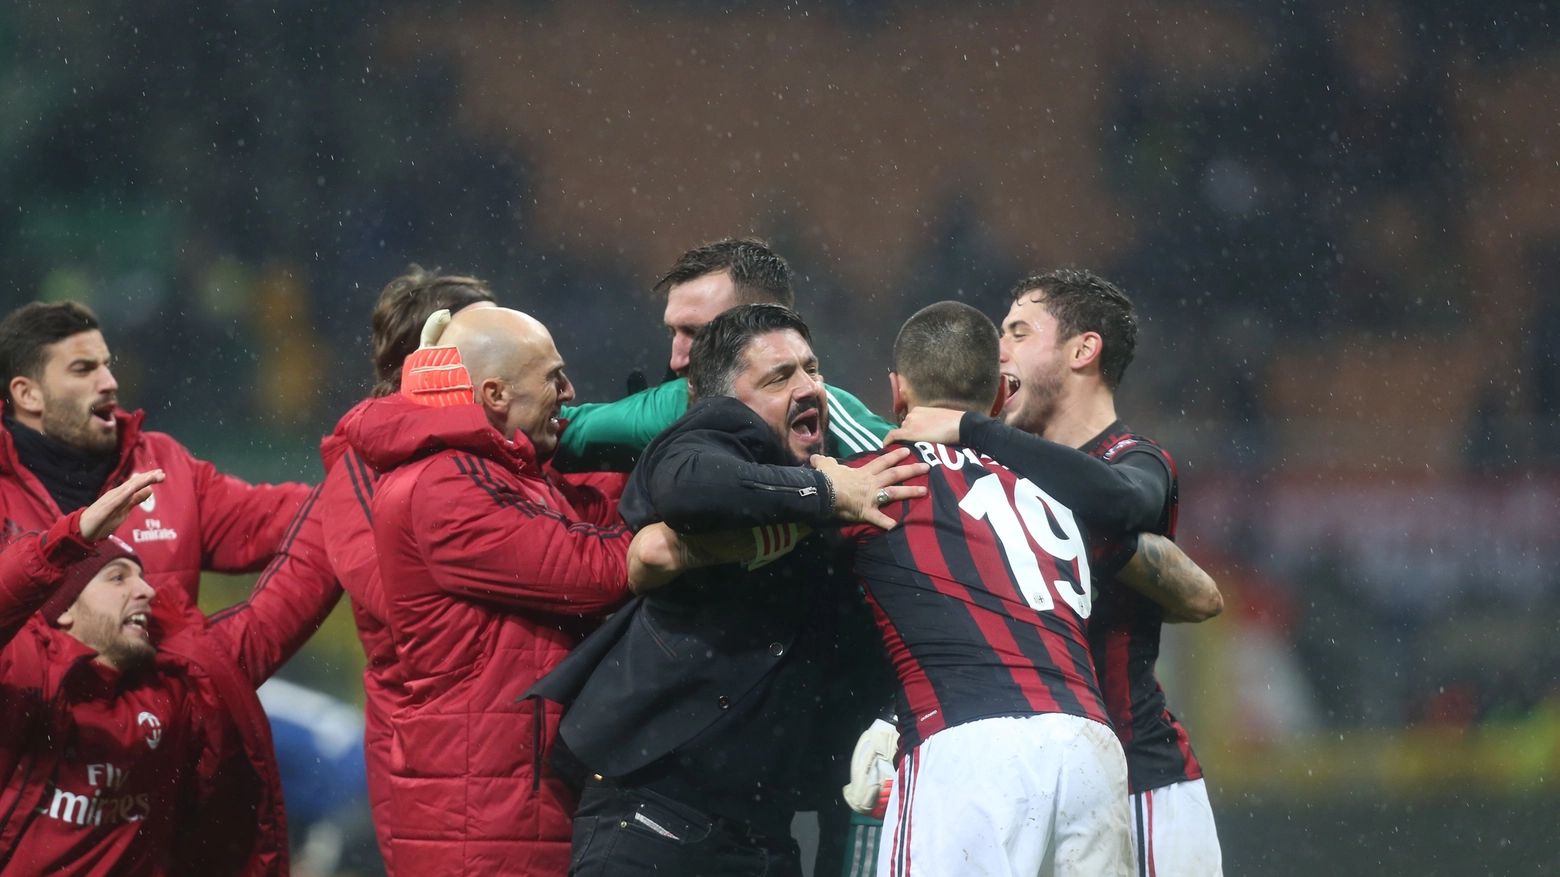 Il Milan esulta, la squadra intorno a Gattuso